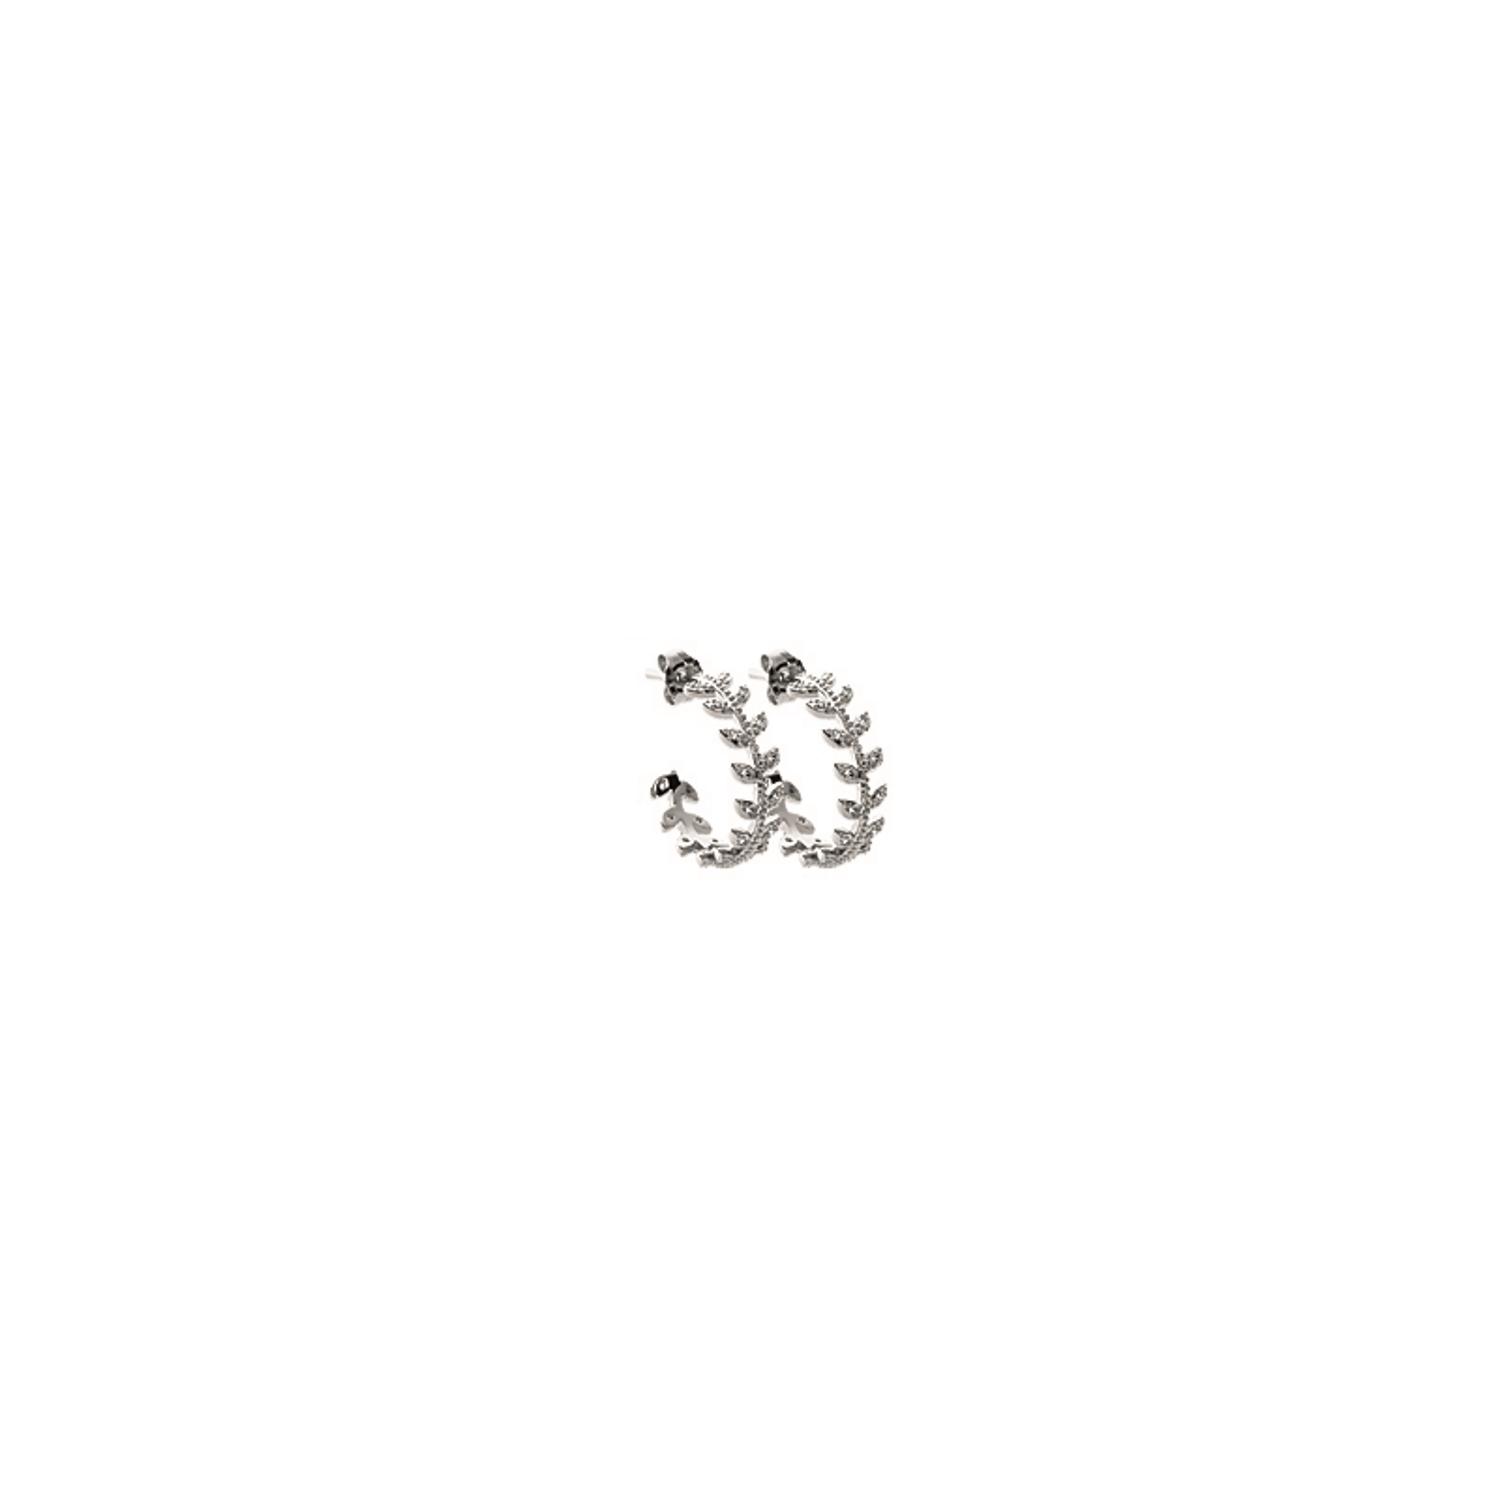 Boucles d'oreilles lauriers en argent 925/000 rhodié et oxyde de zirconium.  Laurier  Adolescent Adulte Femme Fille Indémodable Symboles 